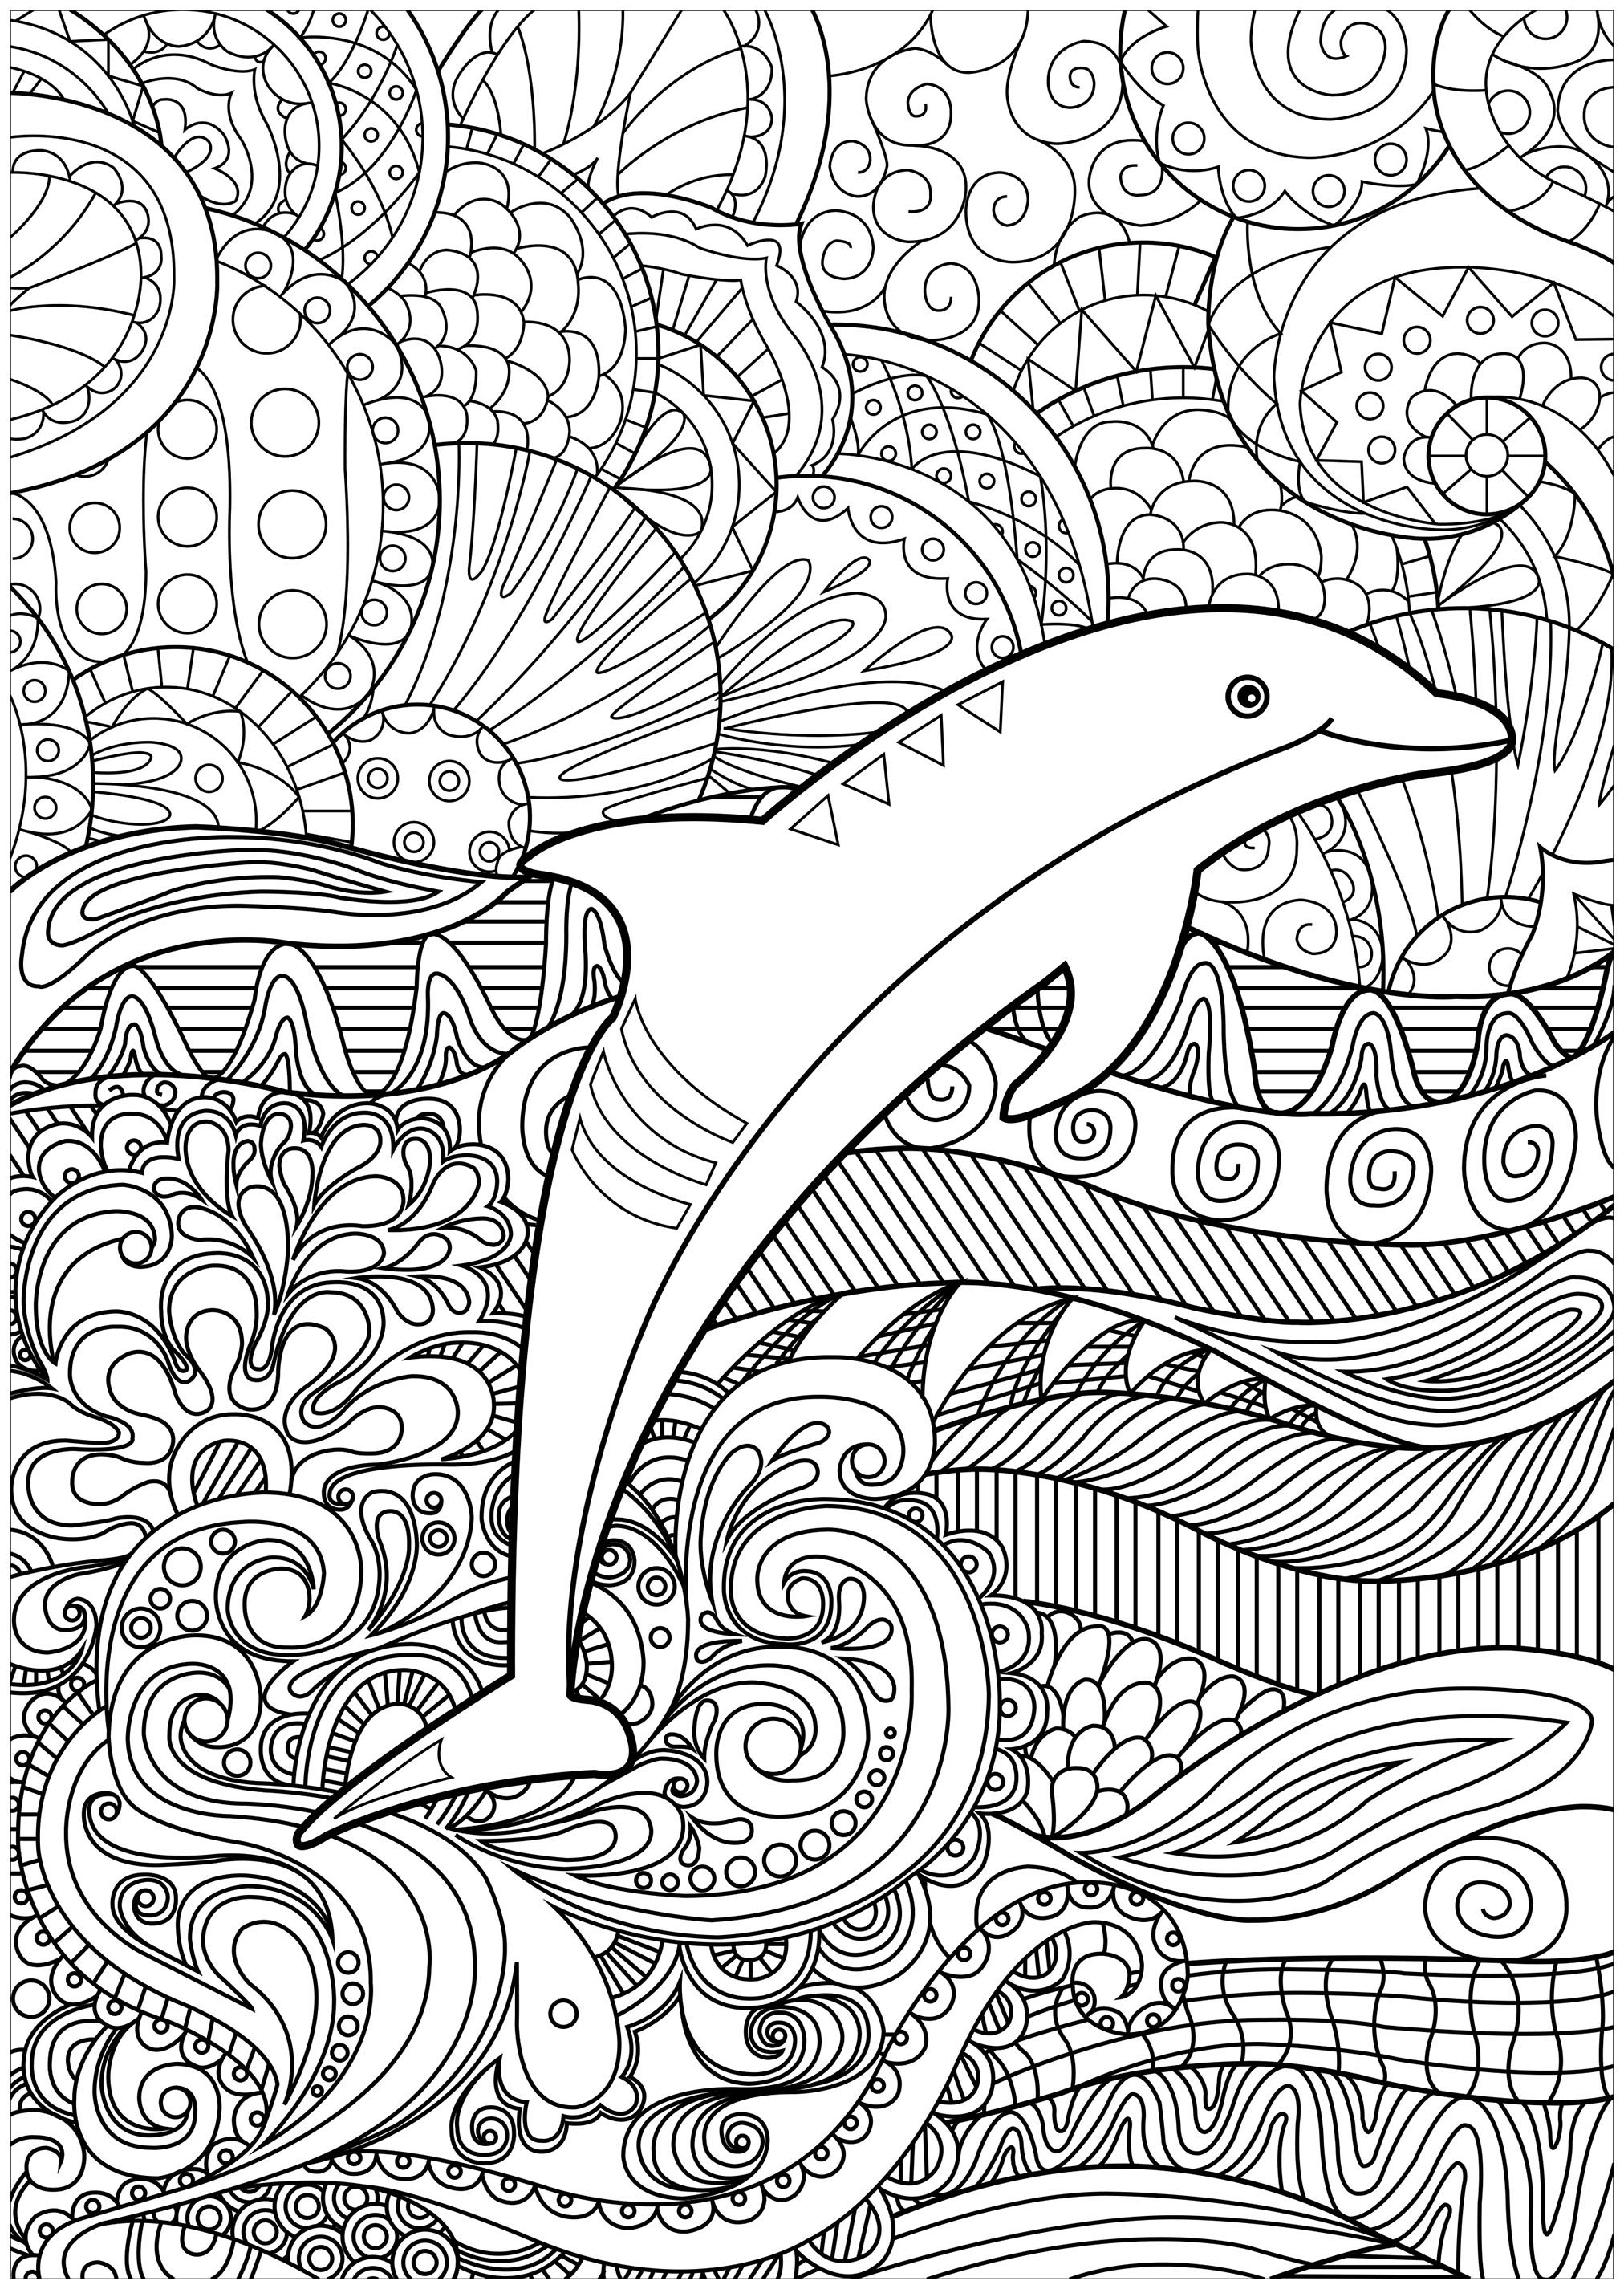 Coloriez les nombreux détails de la mer dans laquelle se trouve cet élégant dauphin